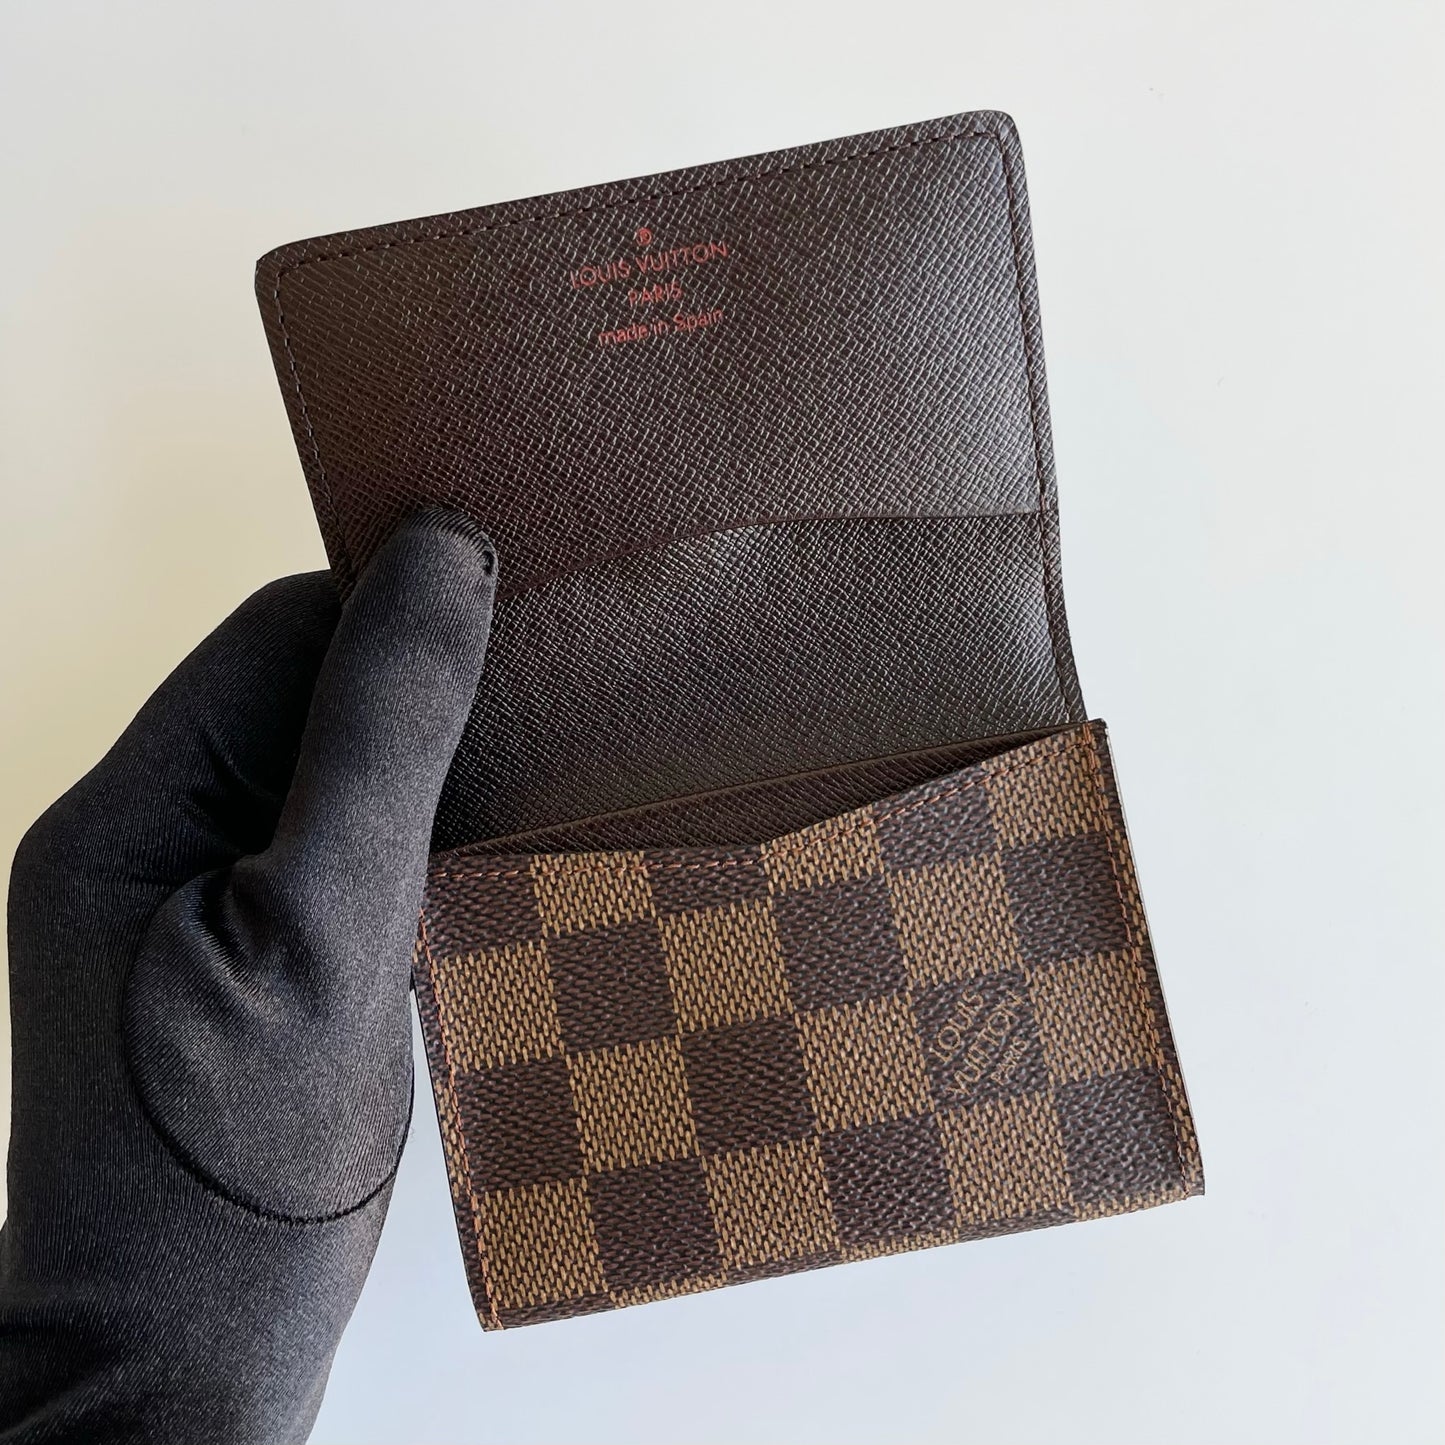 Louis Vuitton Damier Ebene Business Card Holder - A World Of Goods